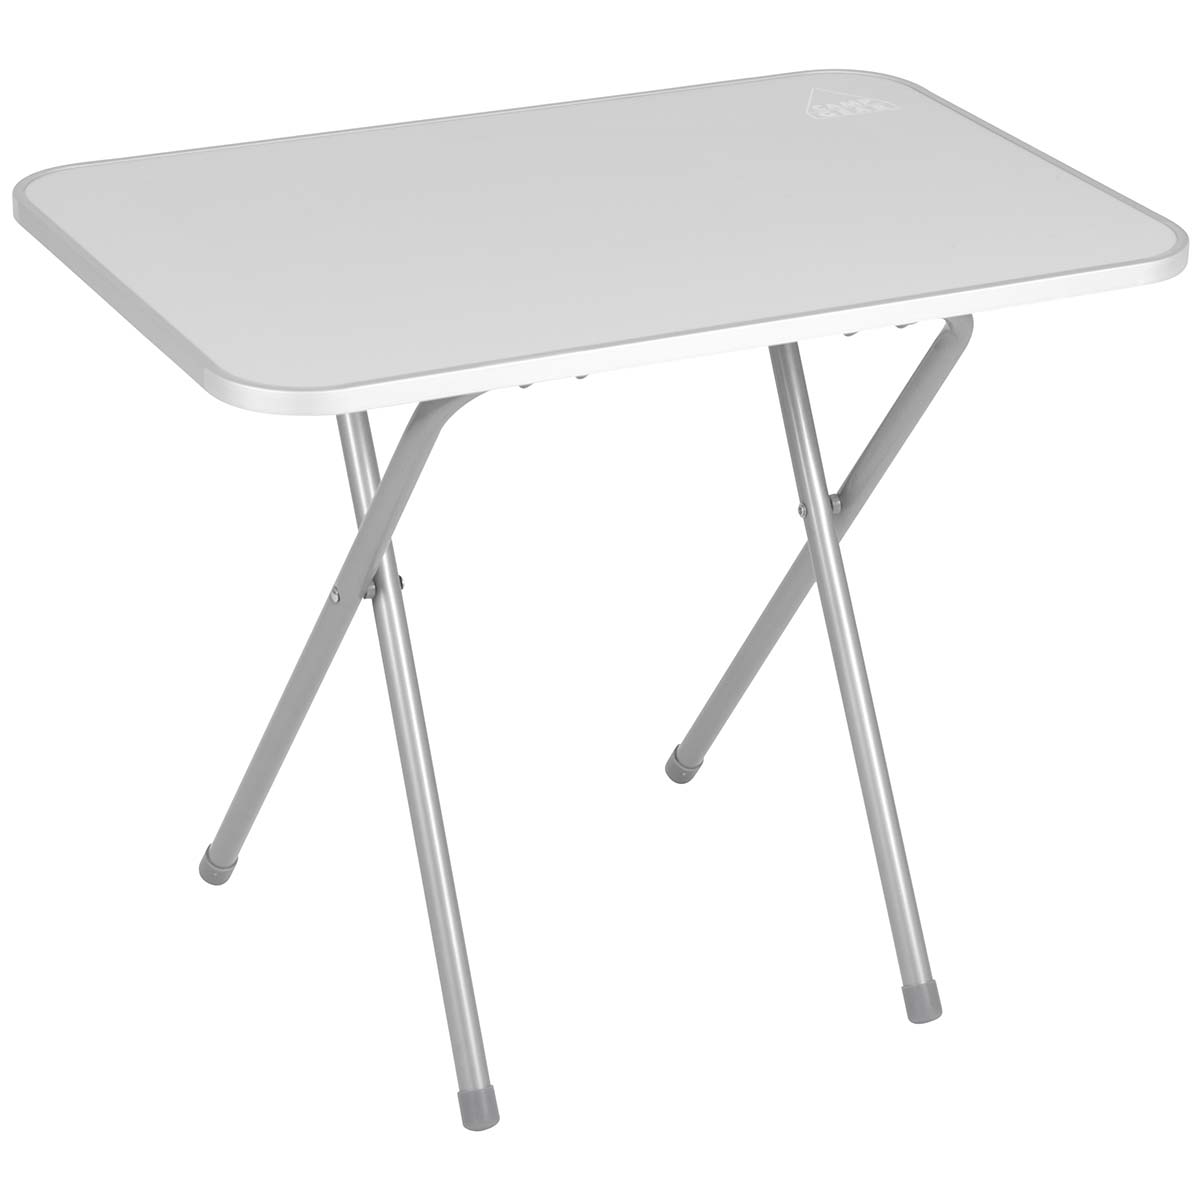 1405060 Een inklapbare tafel. Deze campingtafel beschikt over een stalen frame en een MDF blad. Daarnaast is het tafelblad beter bestand tegen water door de dichtgesealde randen en de aluminium stootrand. De tafel is eenvoudig in te klappen.